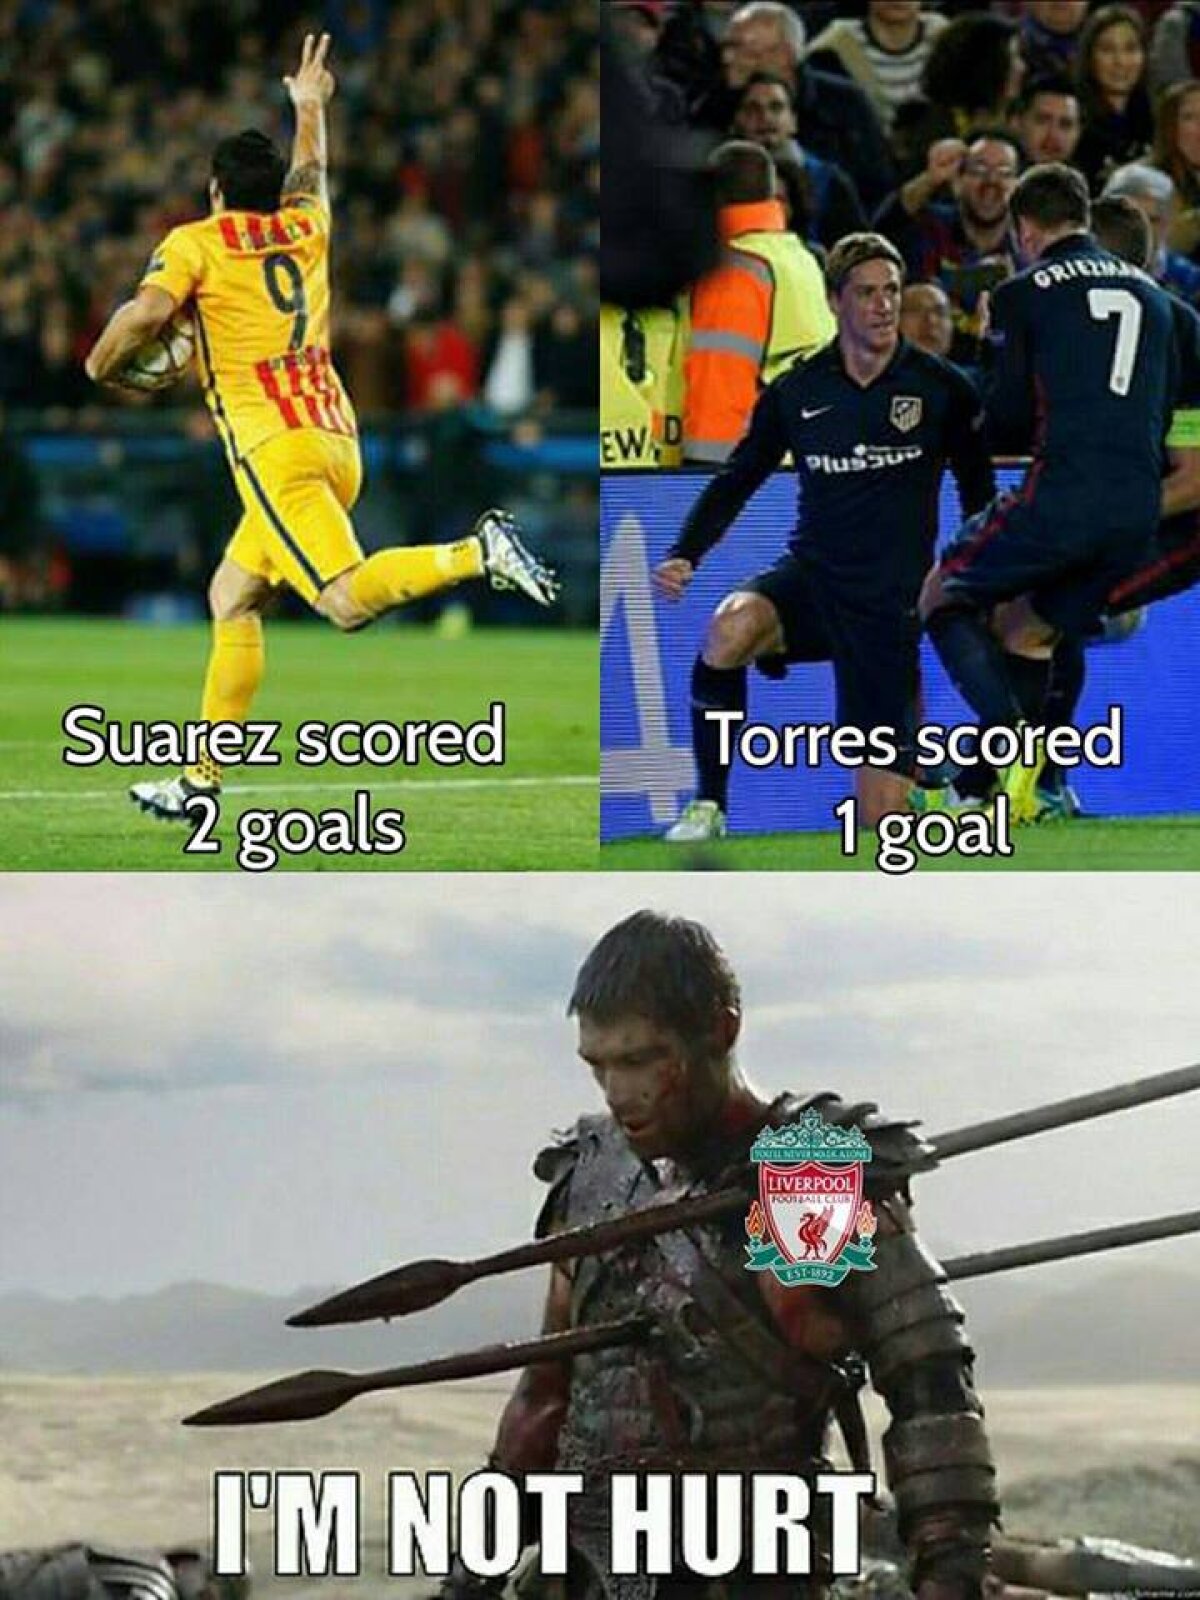 GALERIE FOTO Torres a făcut-o lată din nou! Cele mai tari 10 glume pe net după o seară fără surprize de Champions League